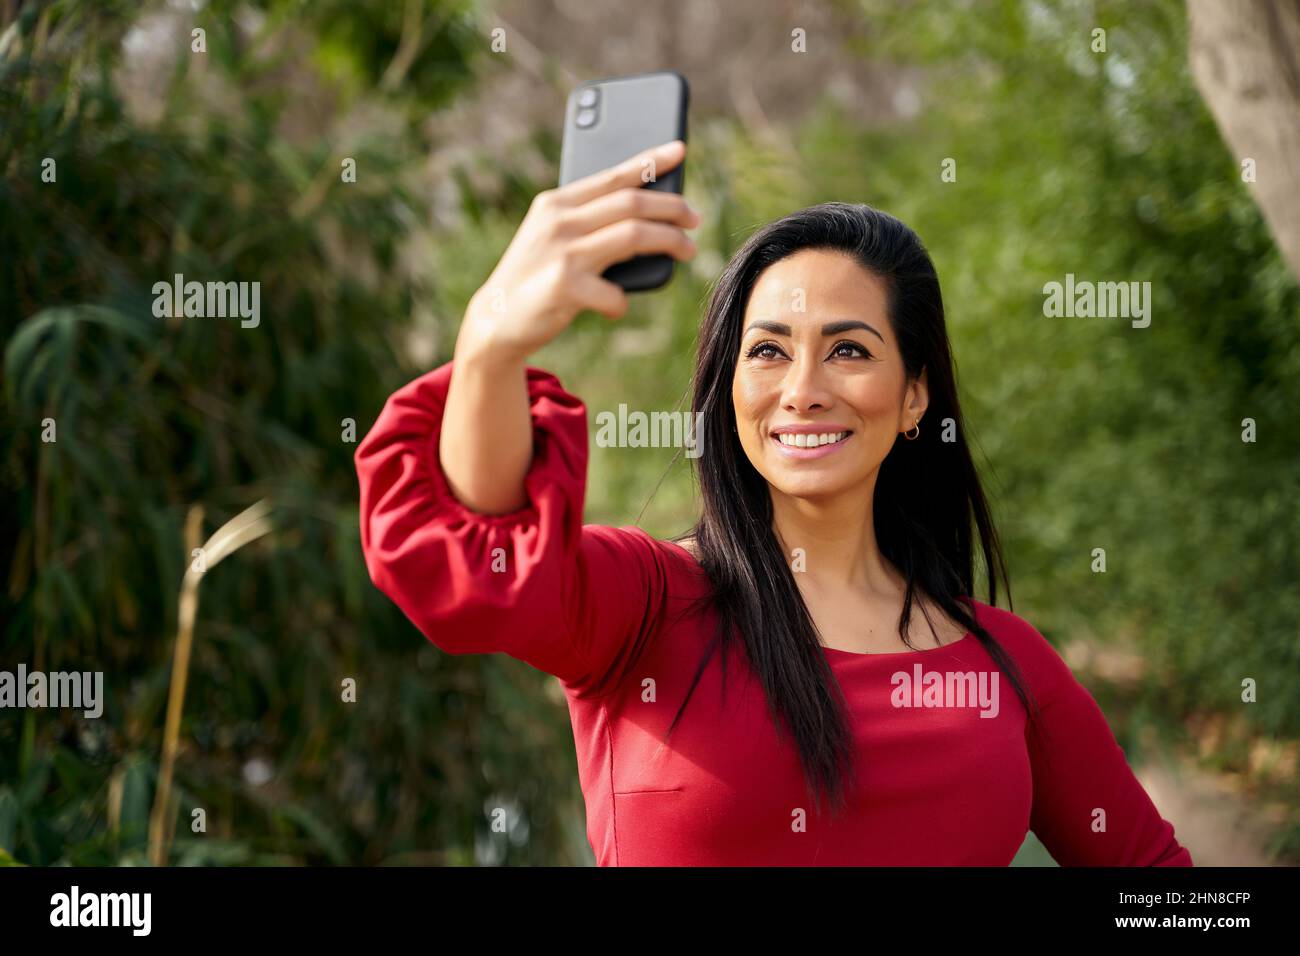 Glückliche hispanische Frau in roten Kleidern, die auf dem Smartphone Selbstporträt macht, während sie auf der Straße mit grünen Pflanzen in der Stadt steht Stockfoto